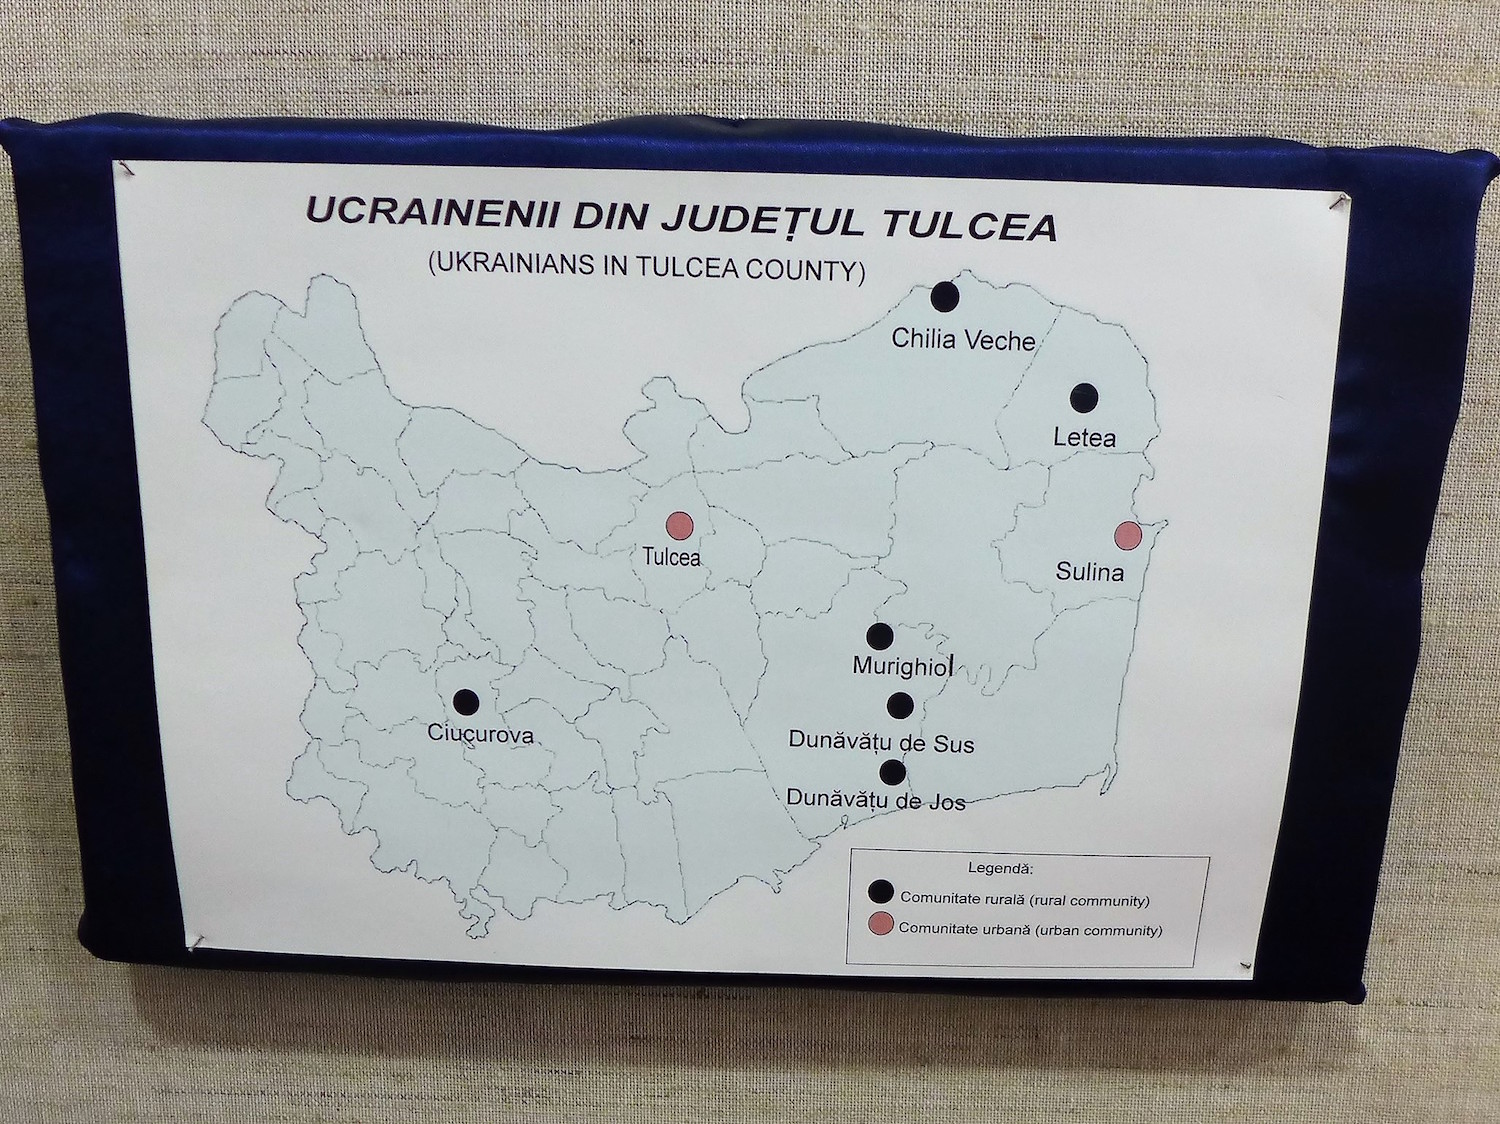 Là, les villages où on trouve des Ukrainiens.